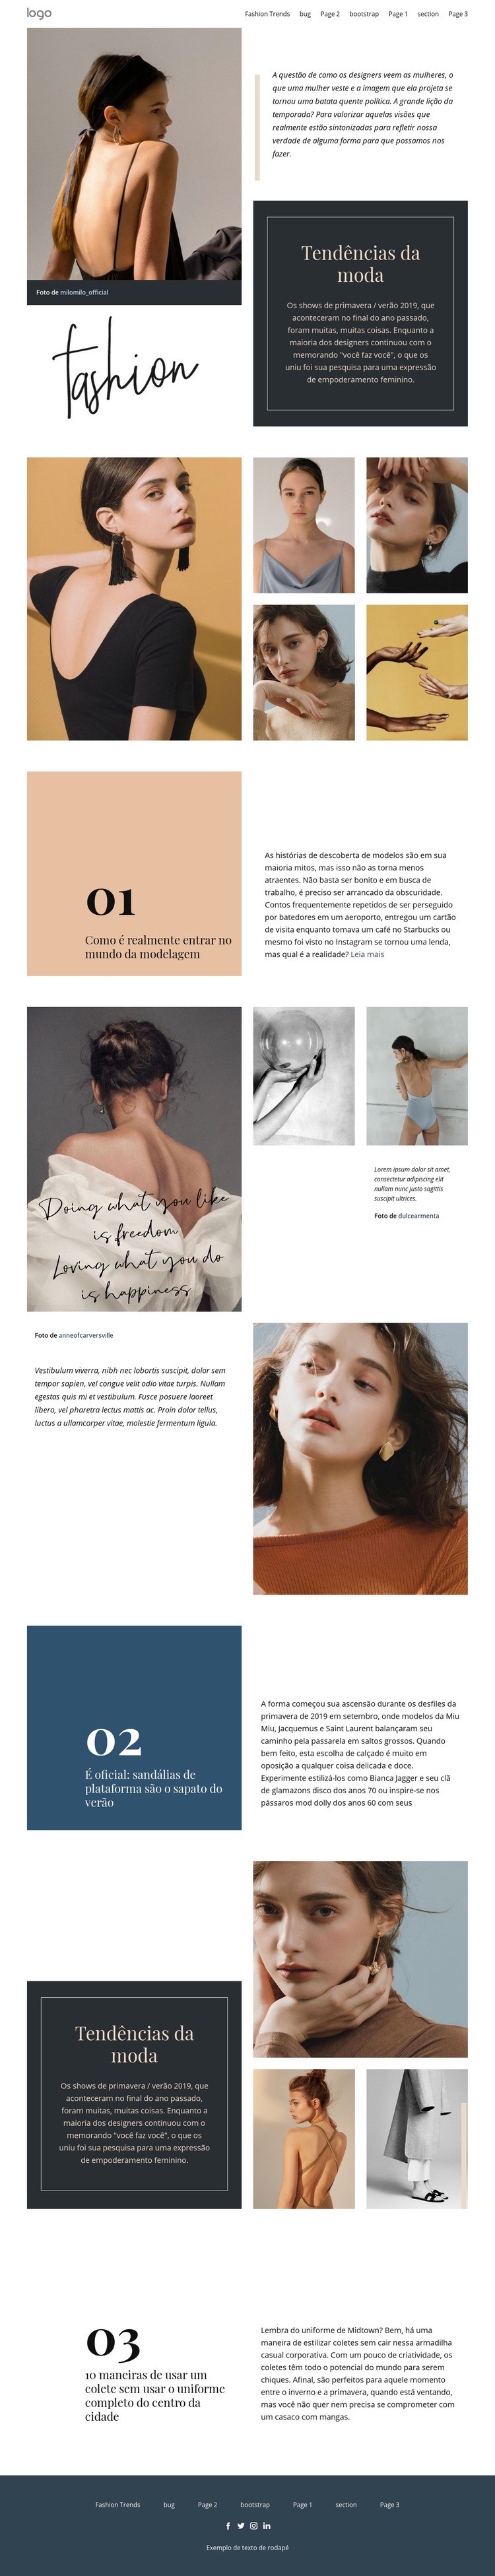 Visão do designer de moda Maquete do site